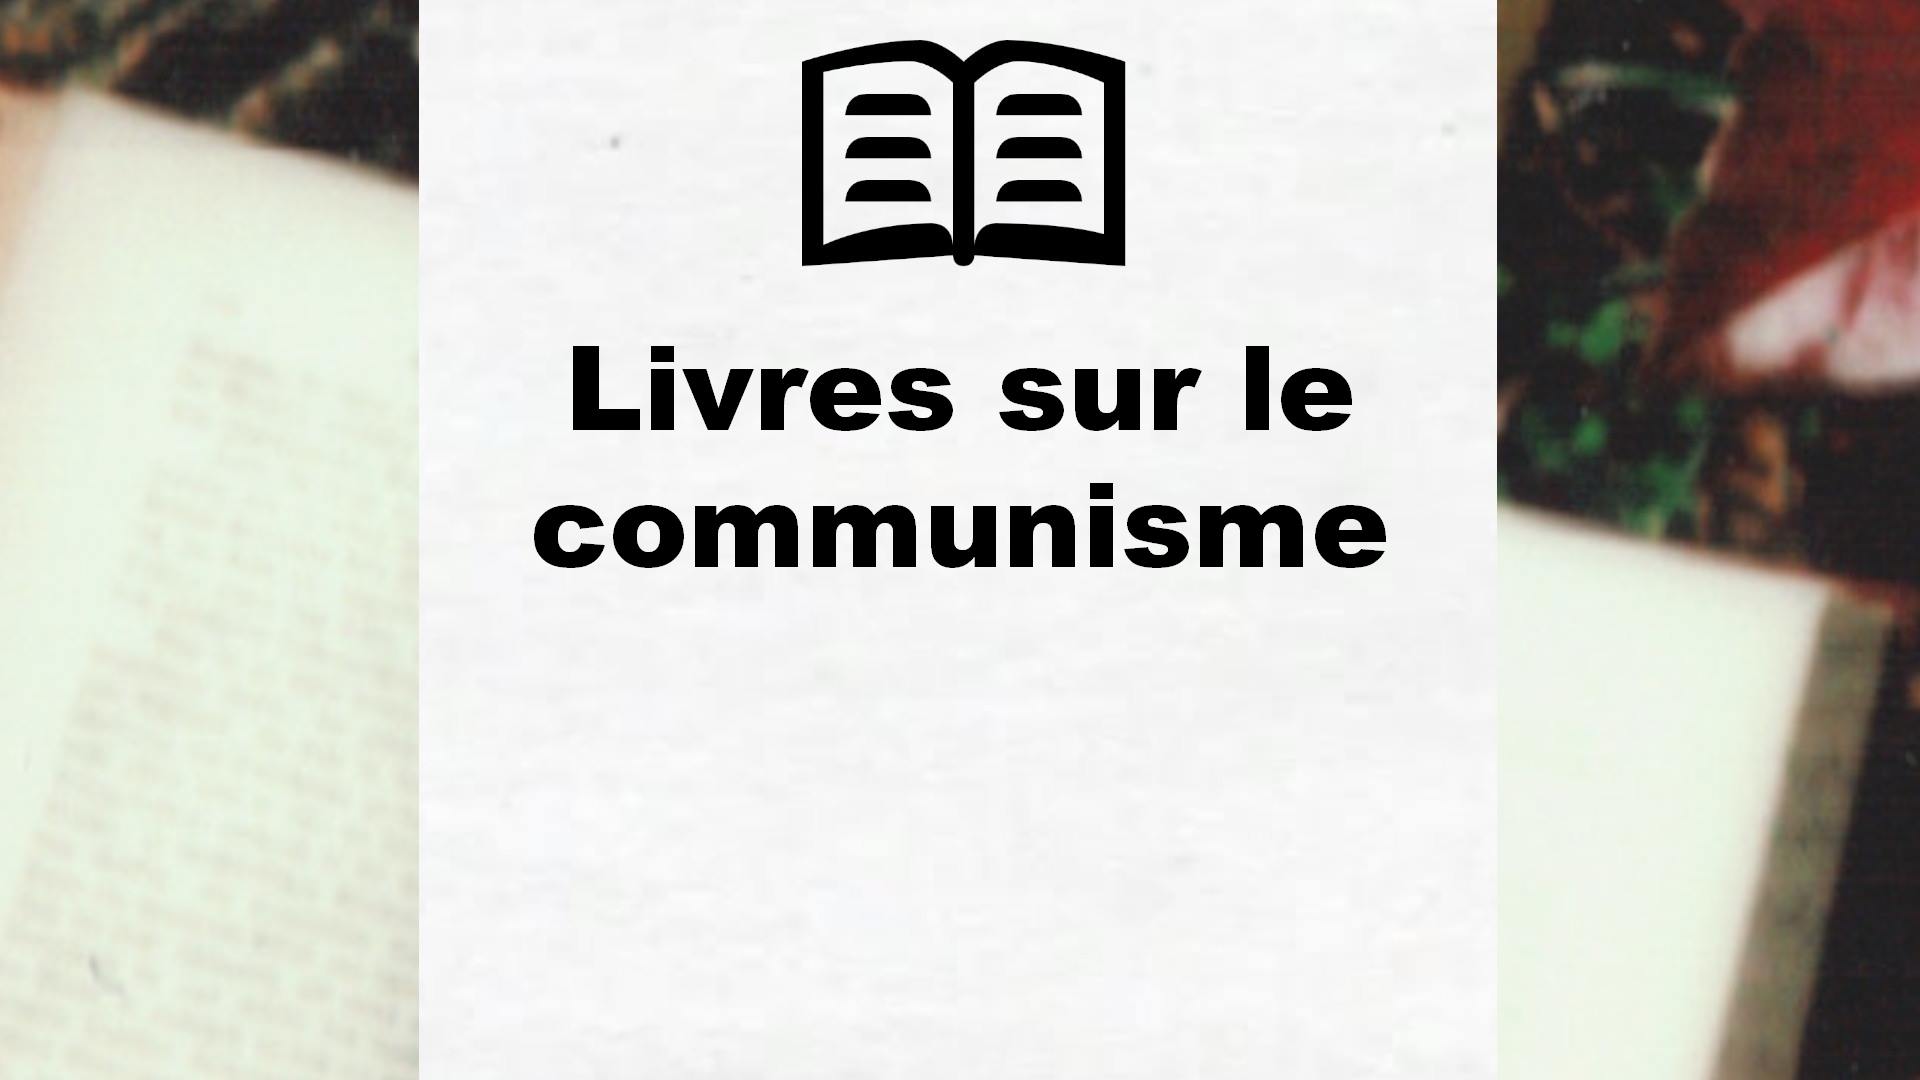 Livres sur le communisme